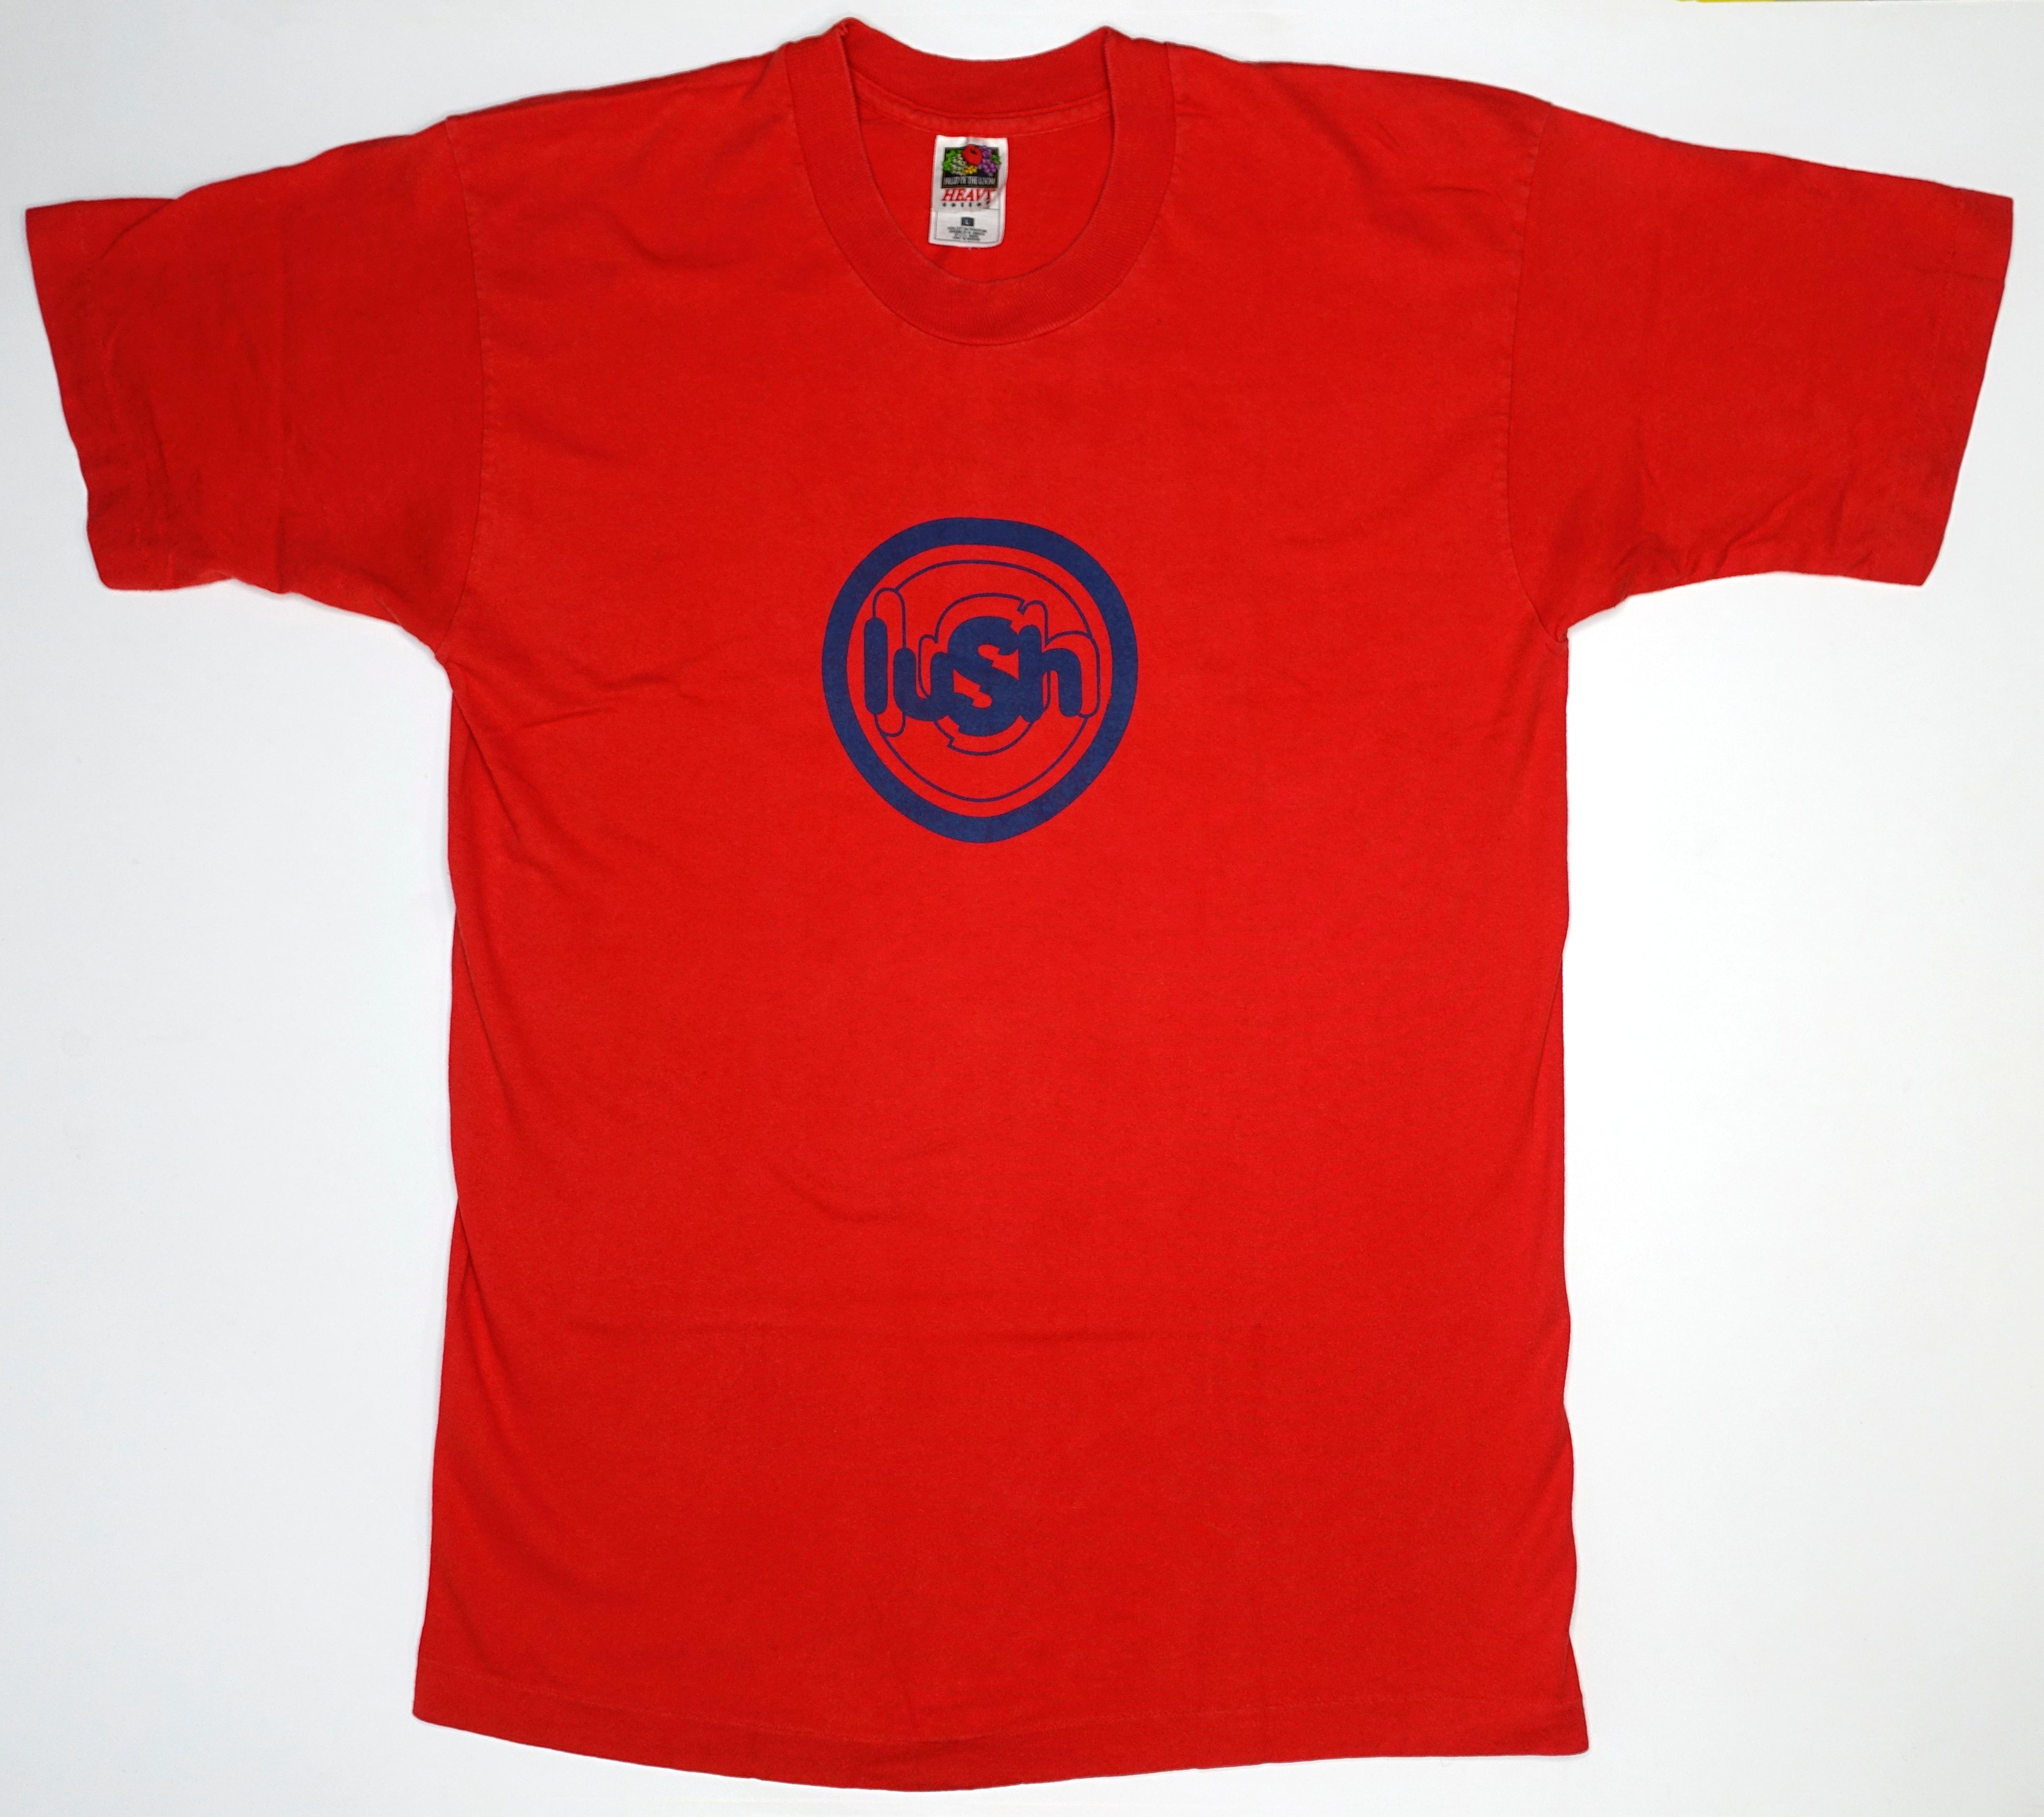 Lush - Shaving The Pavement 1996 Tour Shirt Size Large